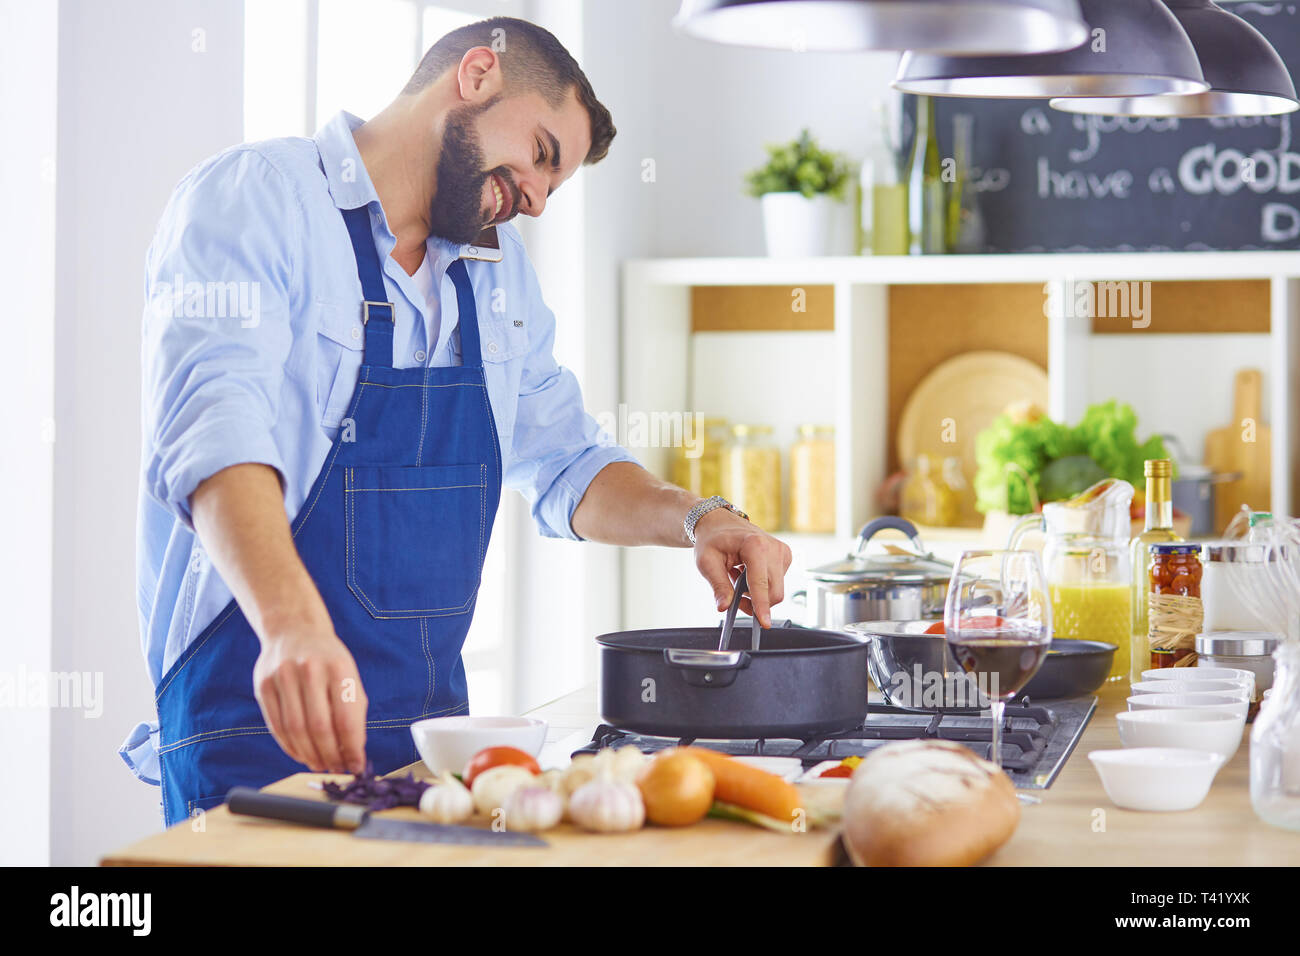 La cocción, la profesión y la gente concepto - chef masculino con el smartphone en restaurante de cocina. Foto de stock